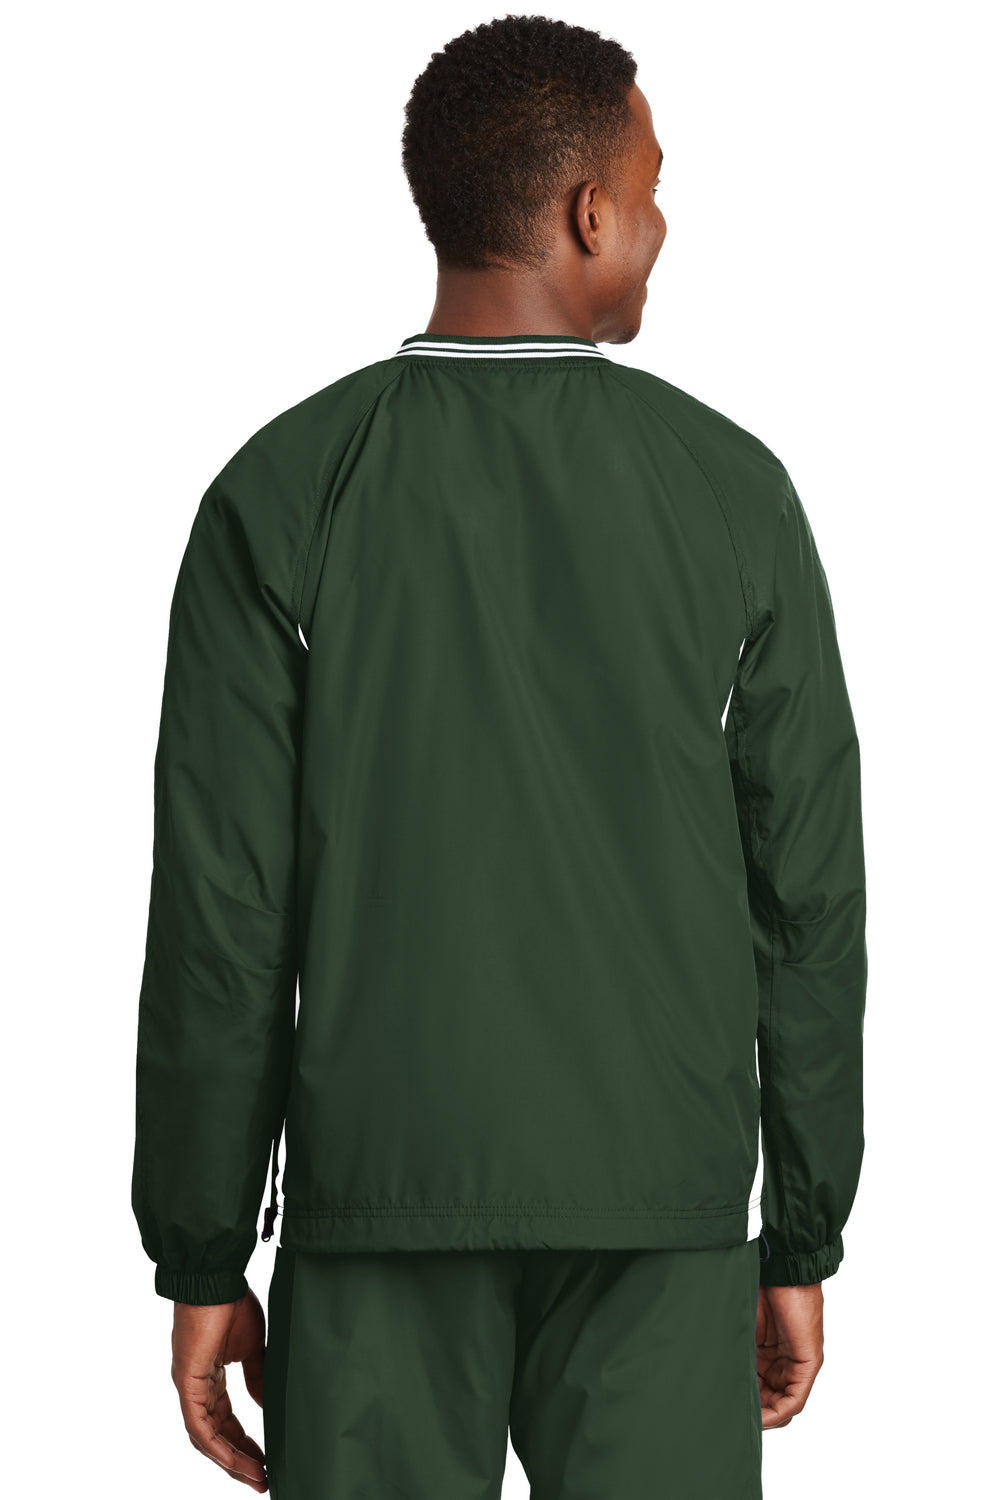 Sport-Tek JST62 Mens Wind & Water Resistant V-Neck Jacket Forest Green/White Back